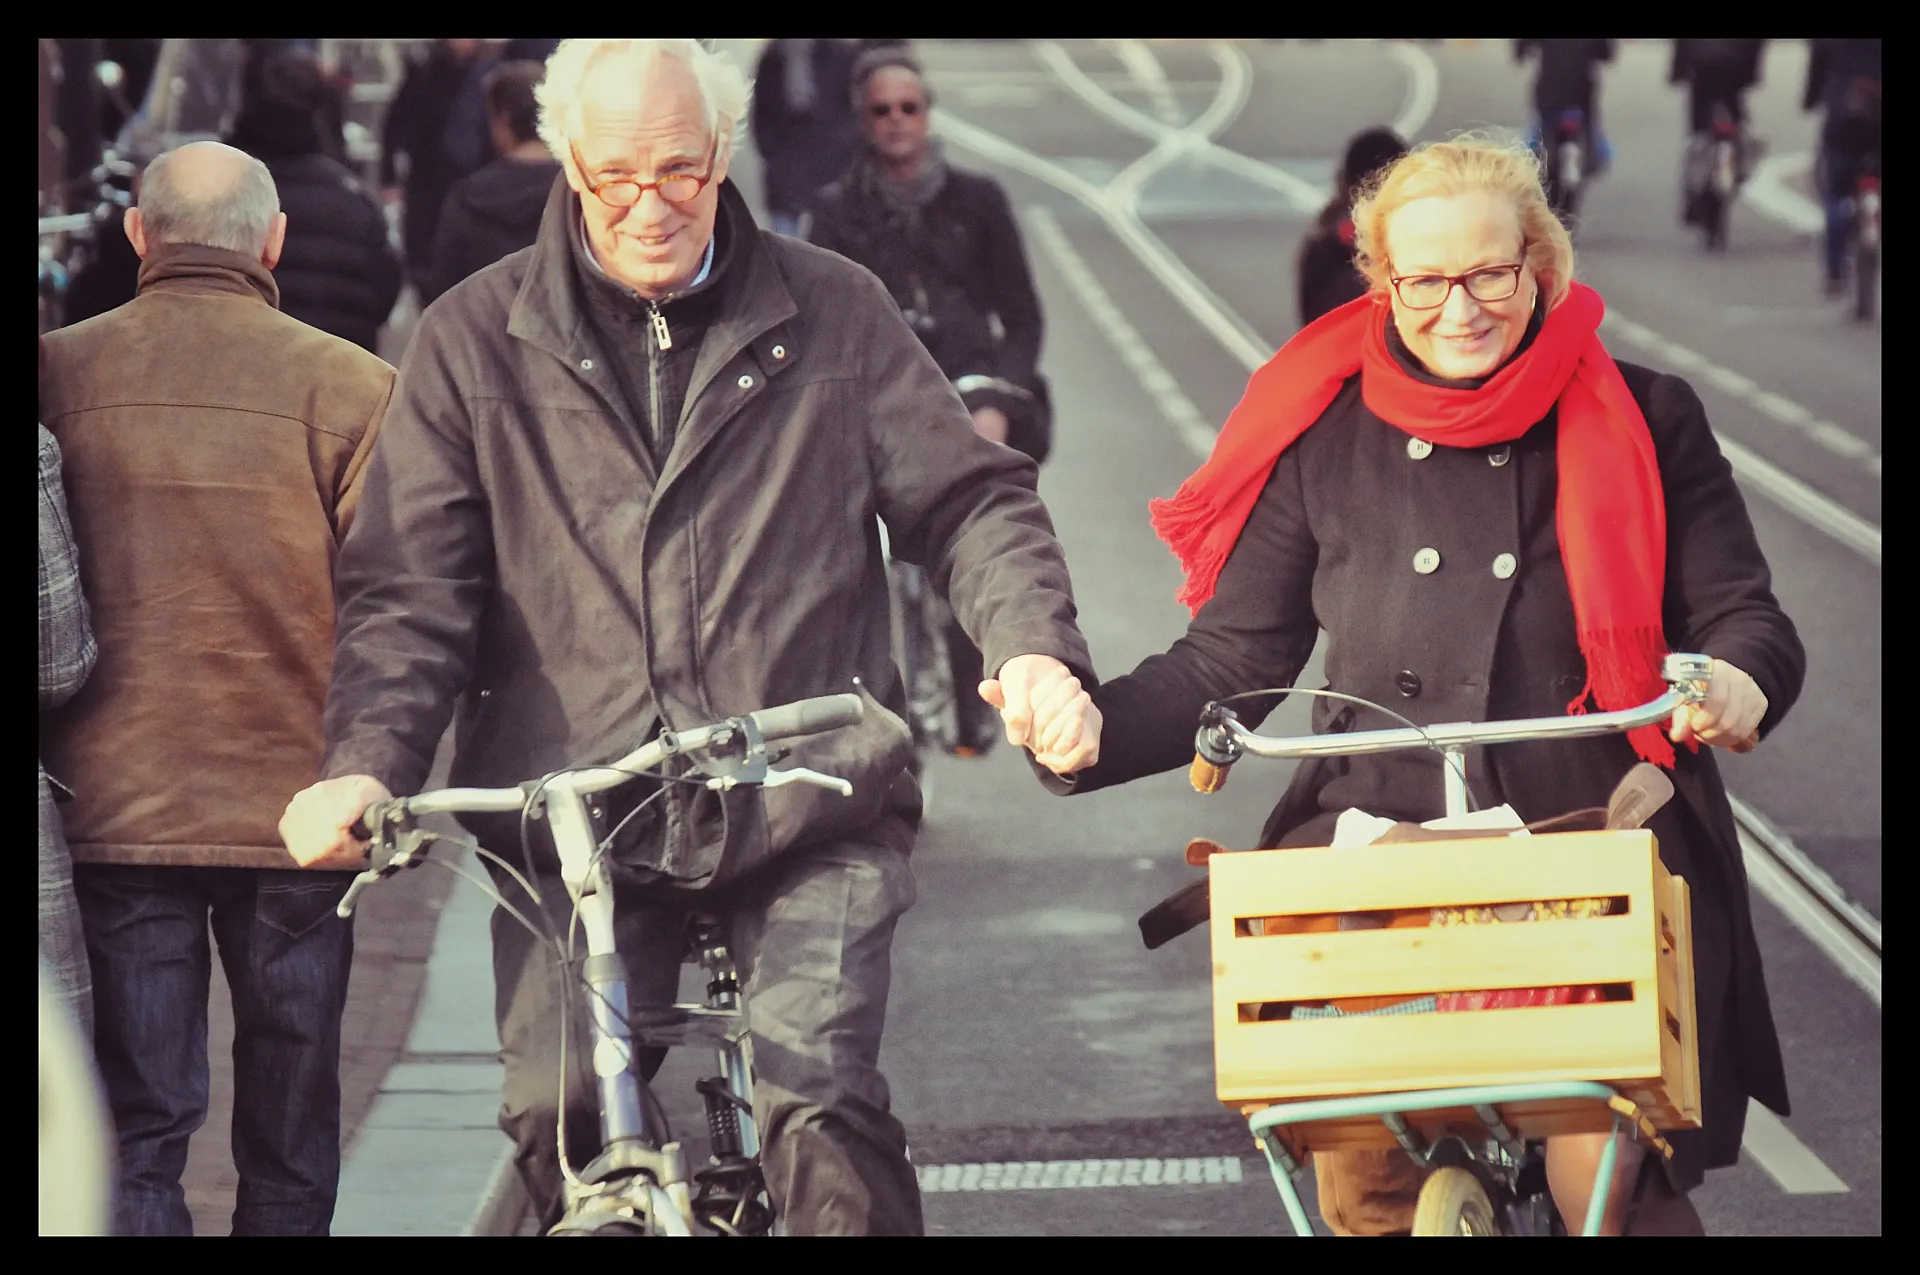 ECF promociona y fomenta el uso de la bici en toda Europa, coordina la red EuroVelo y organiza el congreso Velo-city. (foto: Amsterdamize)